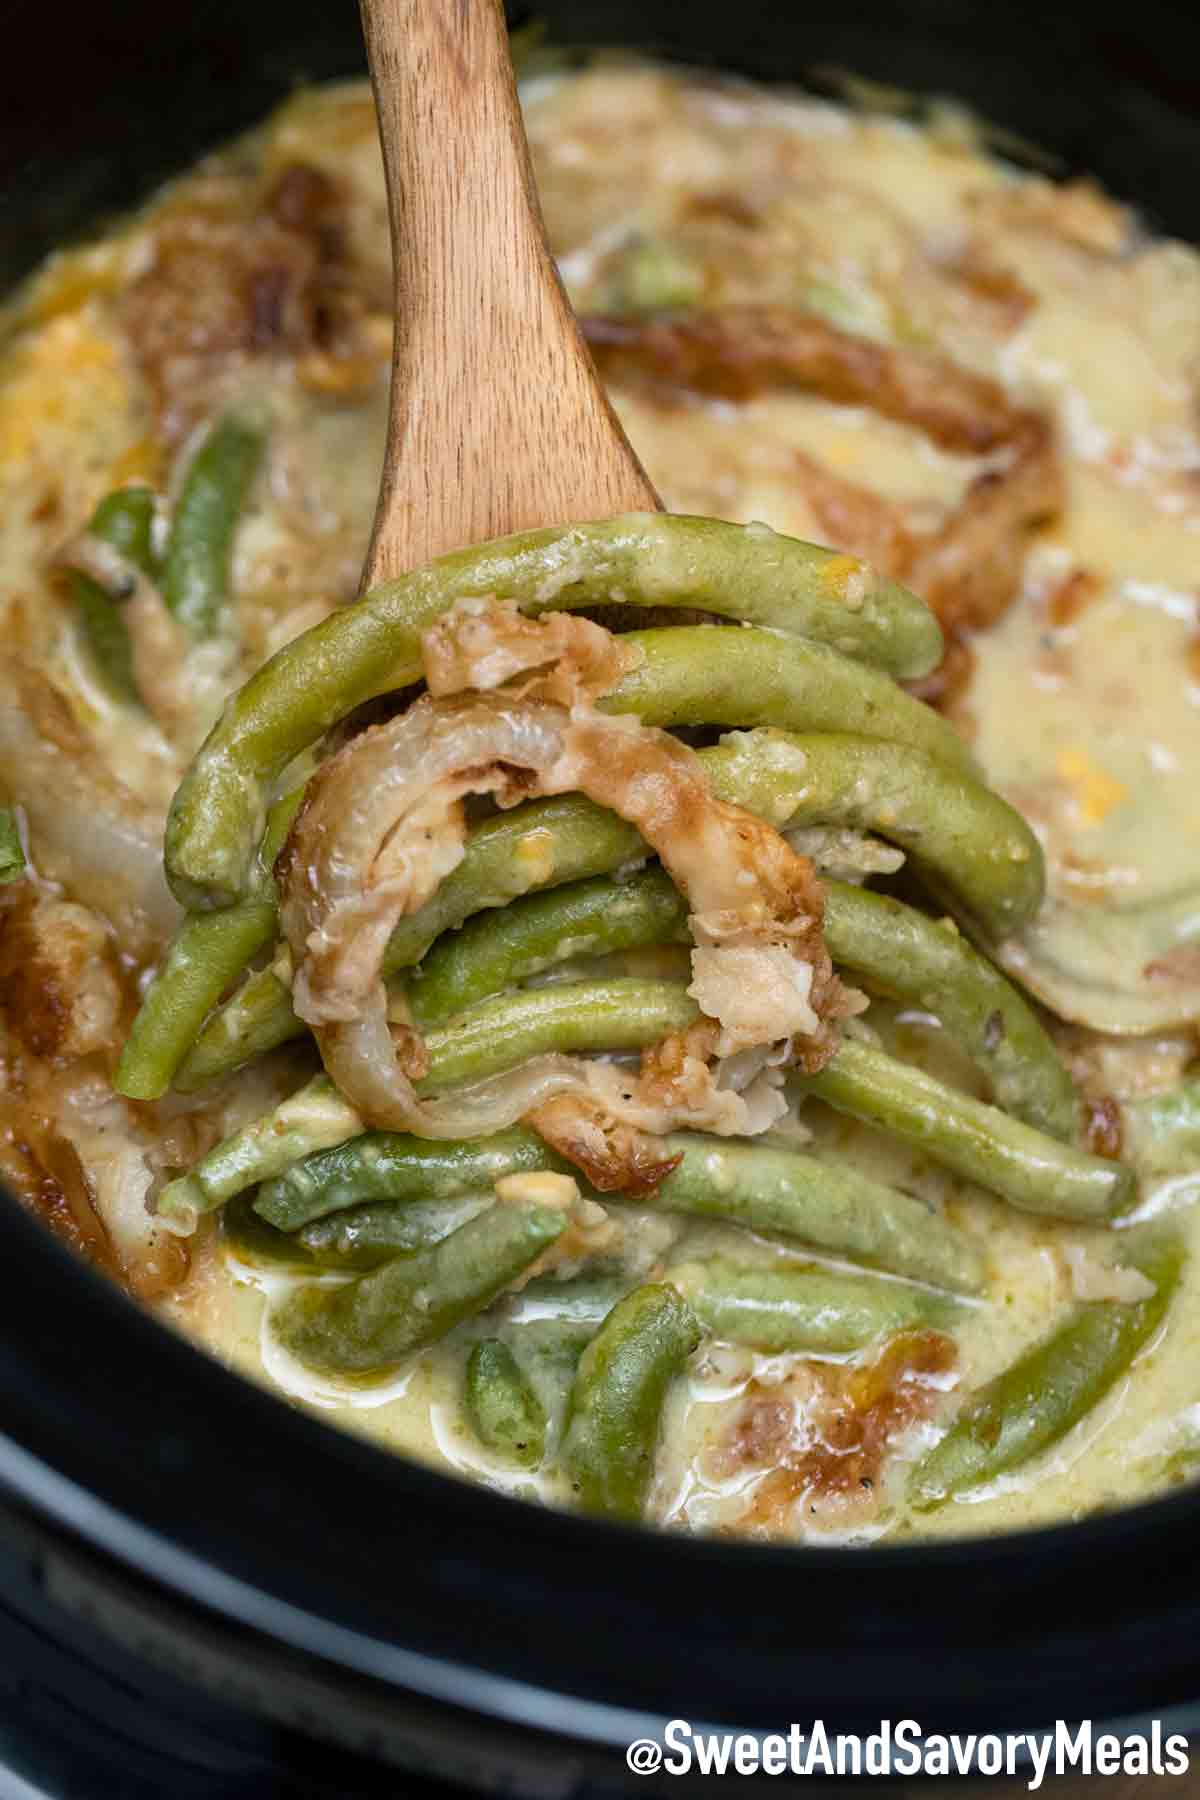 https://sweetandsavorymeals.com/wp-content/uploads/2020/10/slow-cooker-green-bean-casserole.jpg